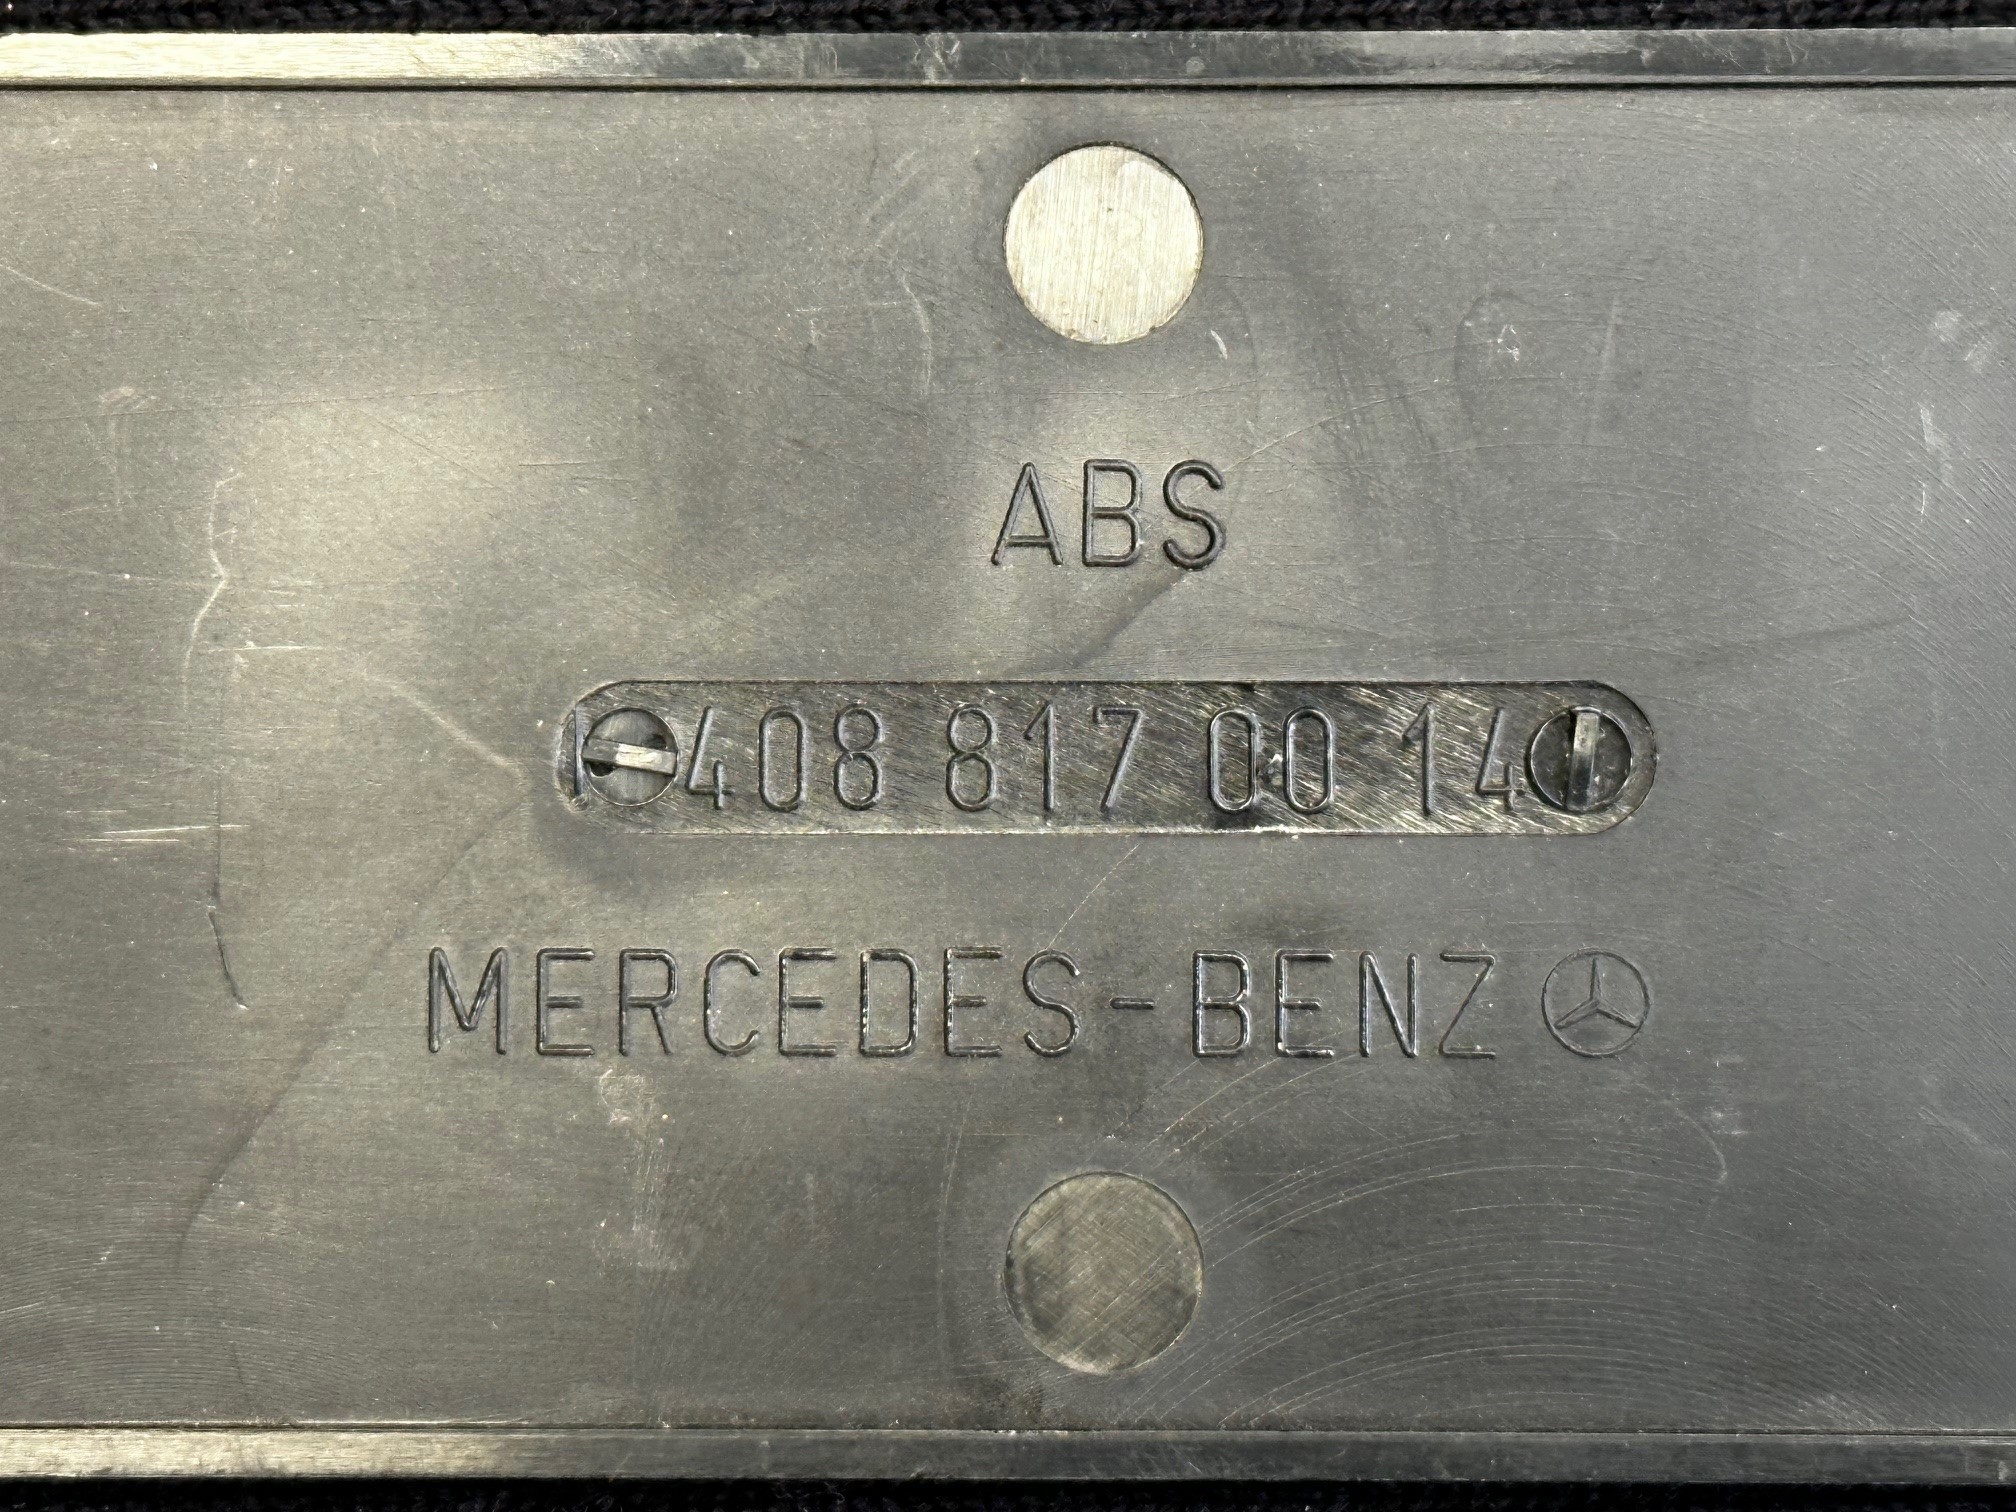 Typenkennzeichen "UNIMOG" Mercedes-Benz U900-U1500 408 424 427 435 Mog Emblem Schriftzug Typenkennzeichen A4088170014